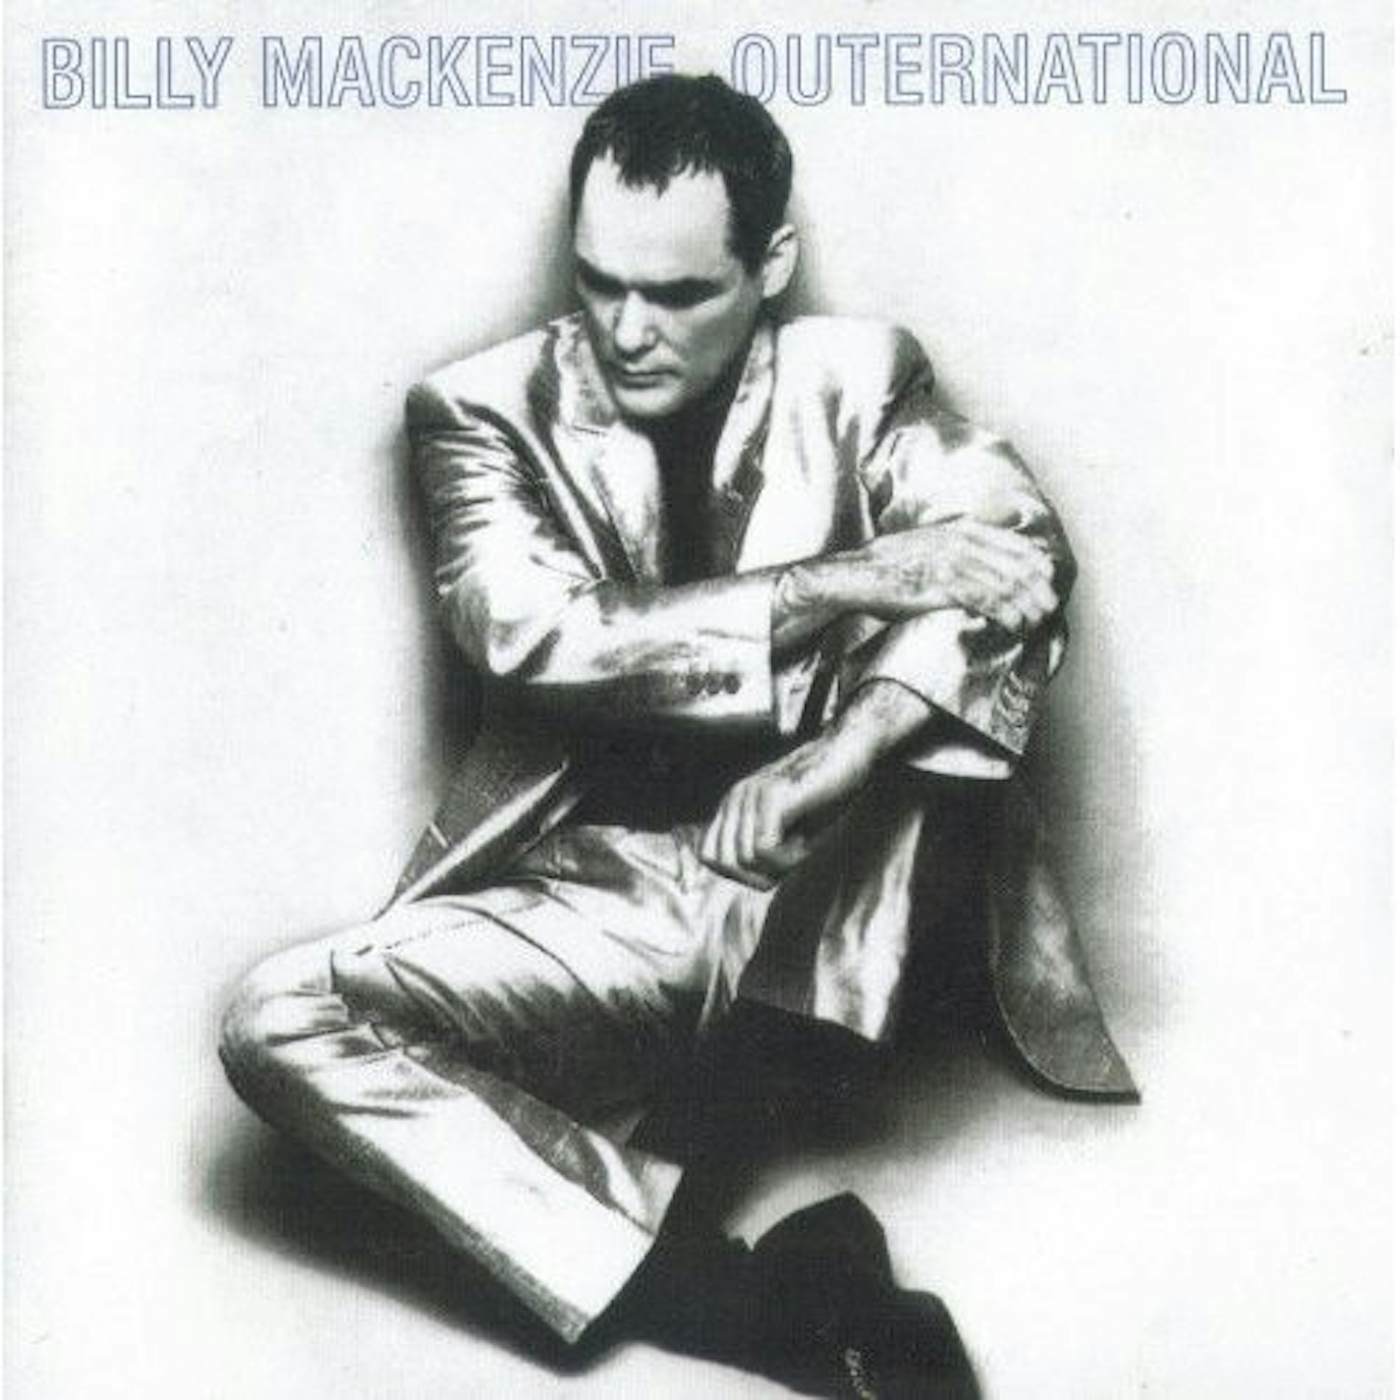 Billy Mackenzie OUTERNATIONAL CD